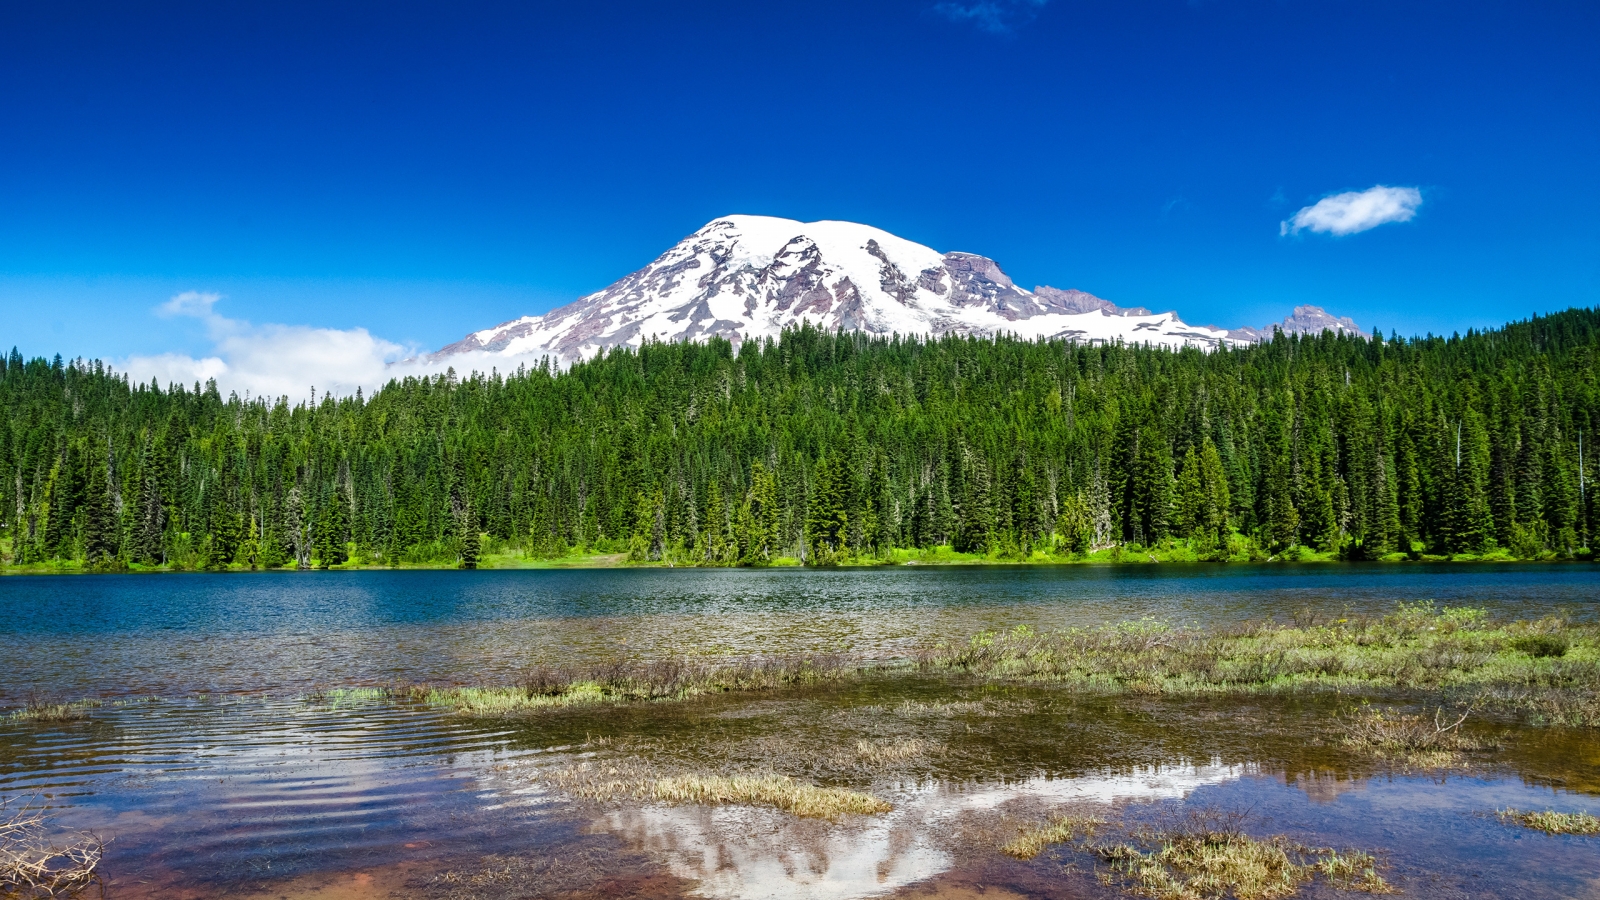 Mount Rainier National Park for 1600 x 900 HDTV resolution